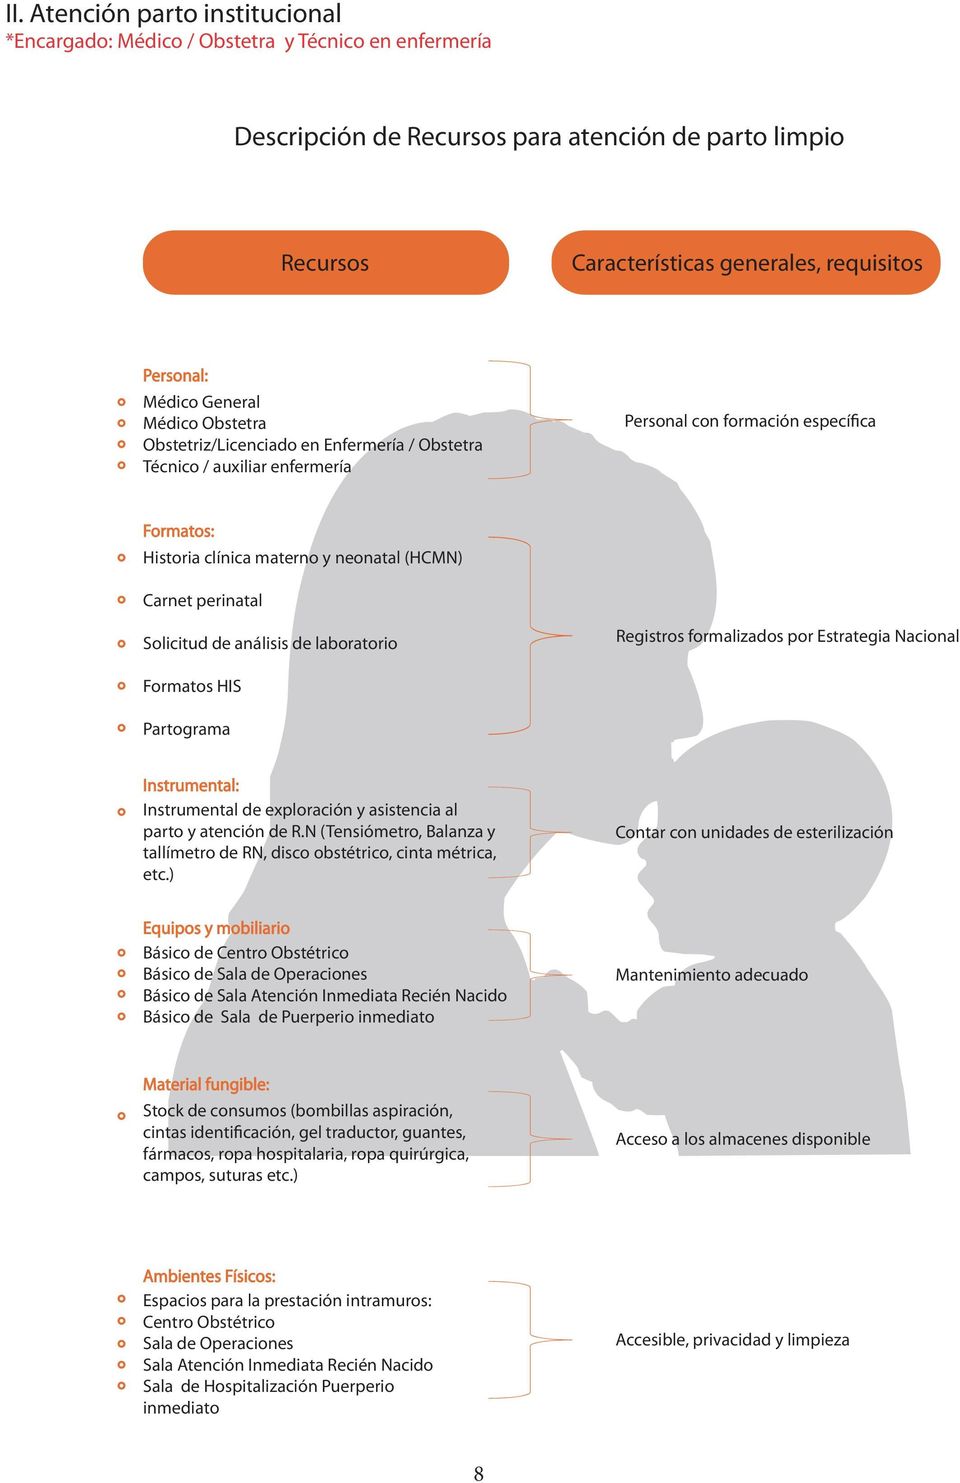 Carnet perinatal Solicitud de análisis de laboratorio Registros formalizados por Estrategia Nacional Formatos HIS Partograma Instrumental: Instrumental de exploración y asistencia al parto y atención